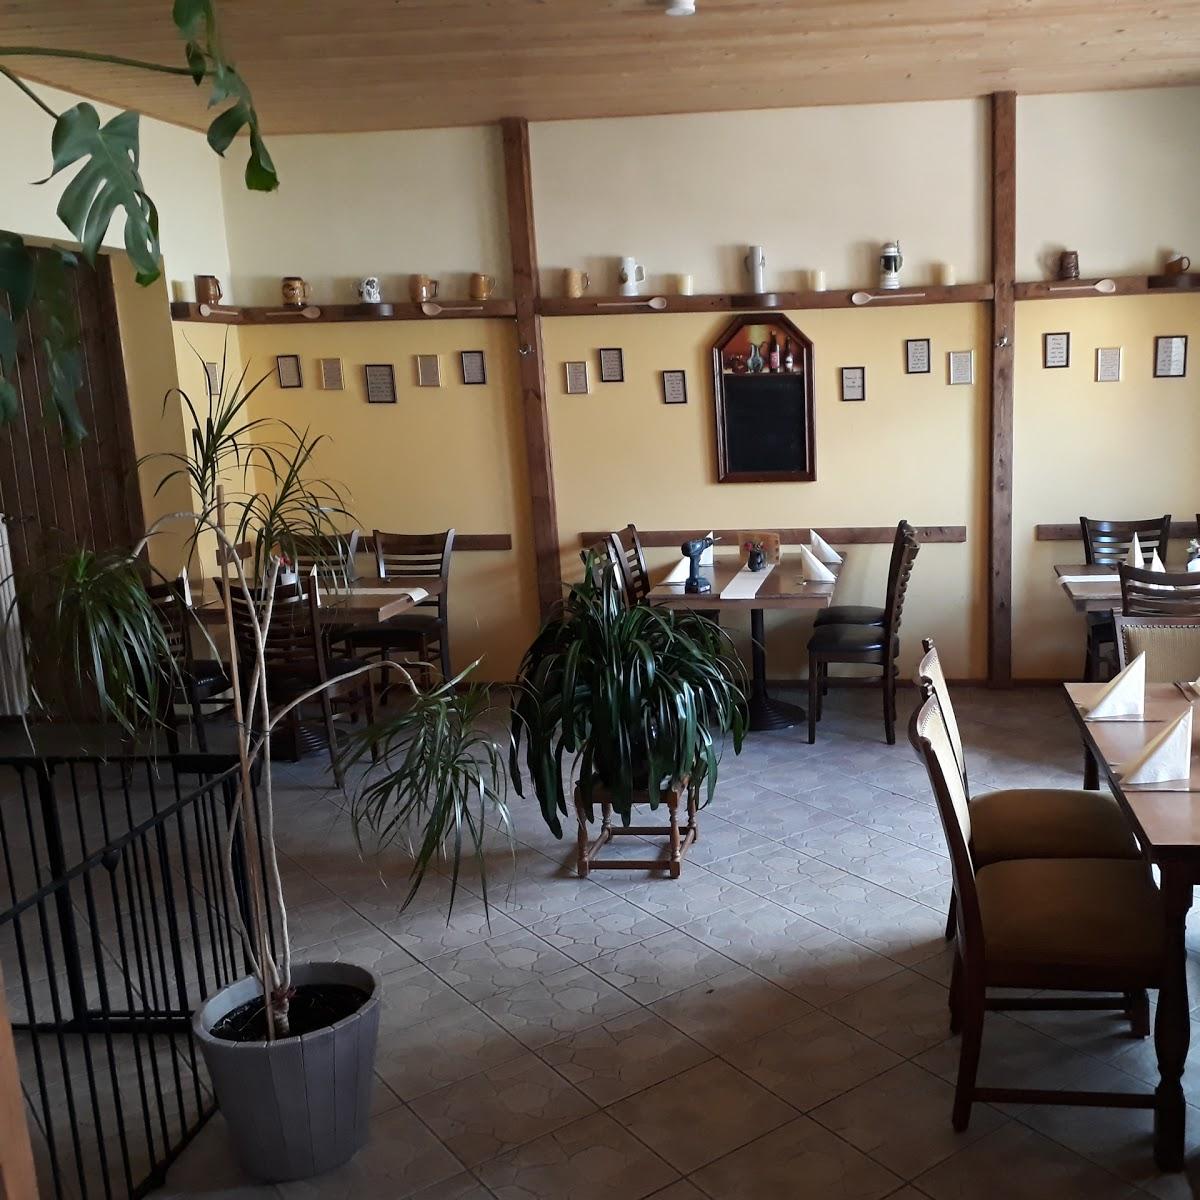 Restaurant "Gaststube   Zum Kochlöffel  " in Brandis